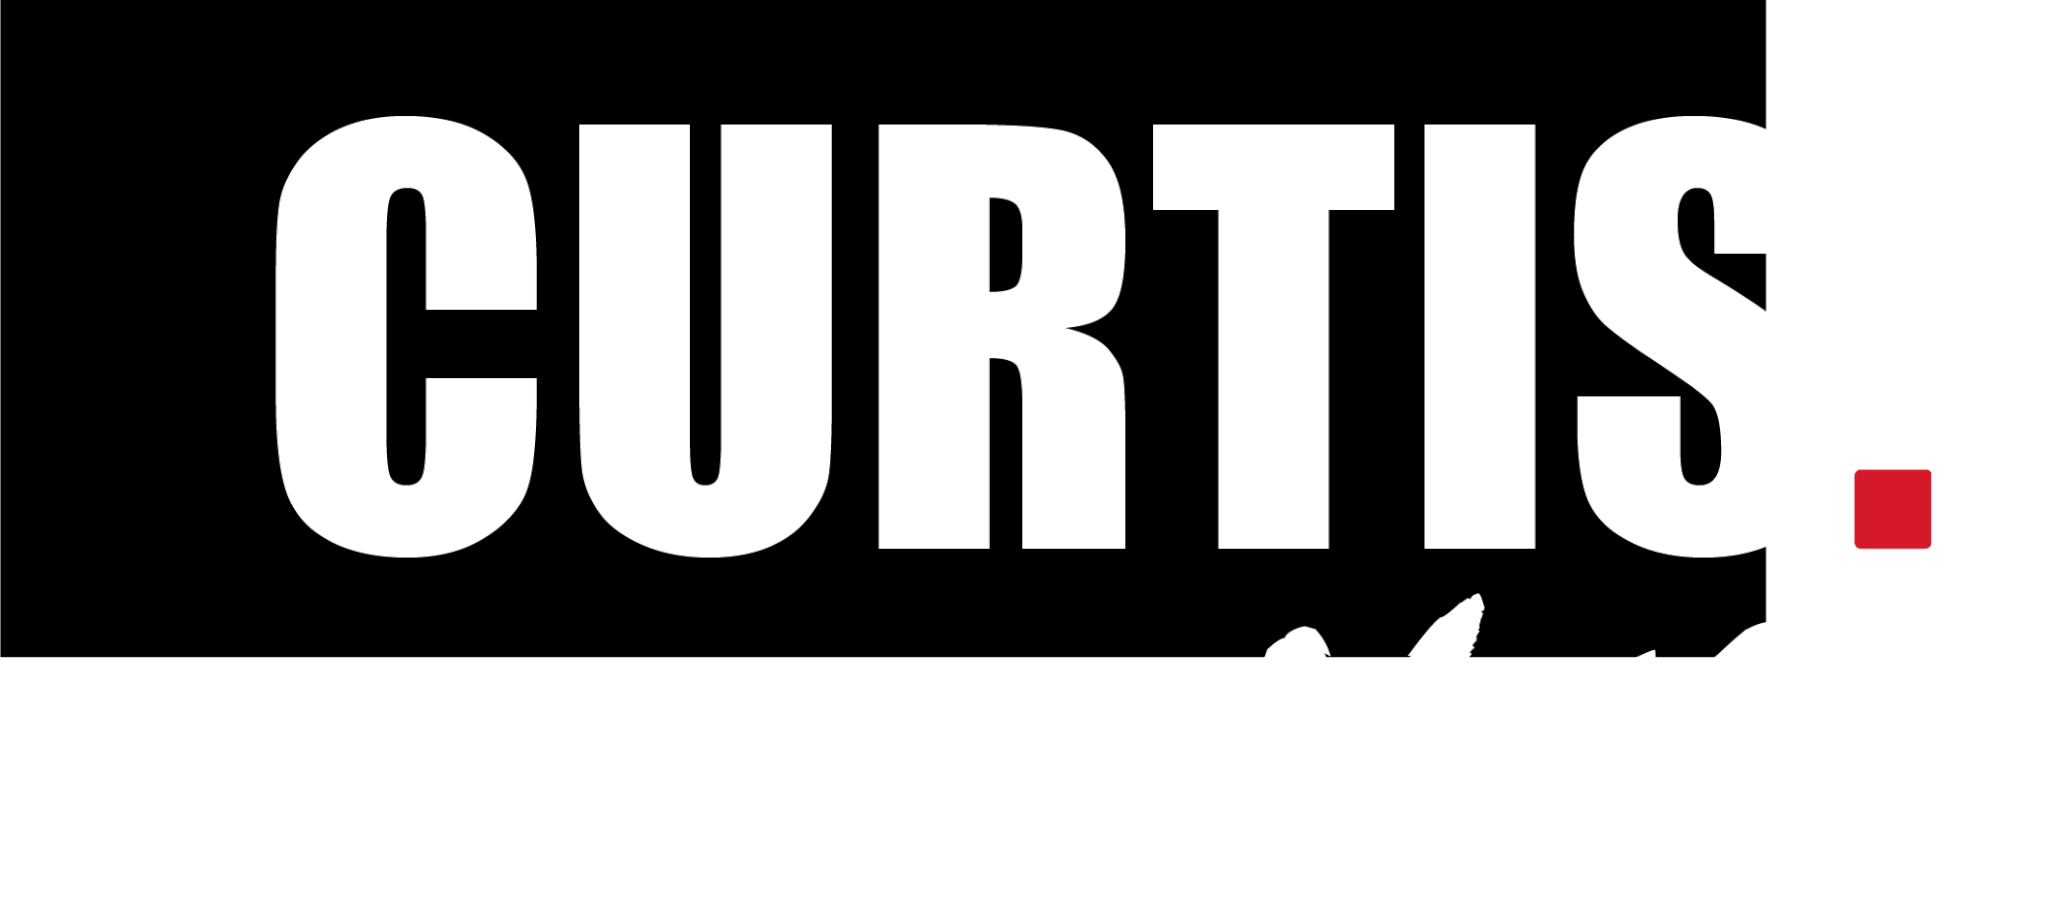 Logo Curtis Music